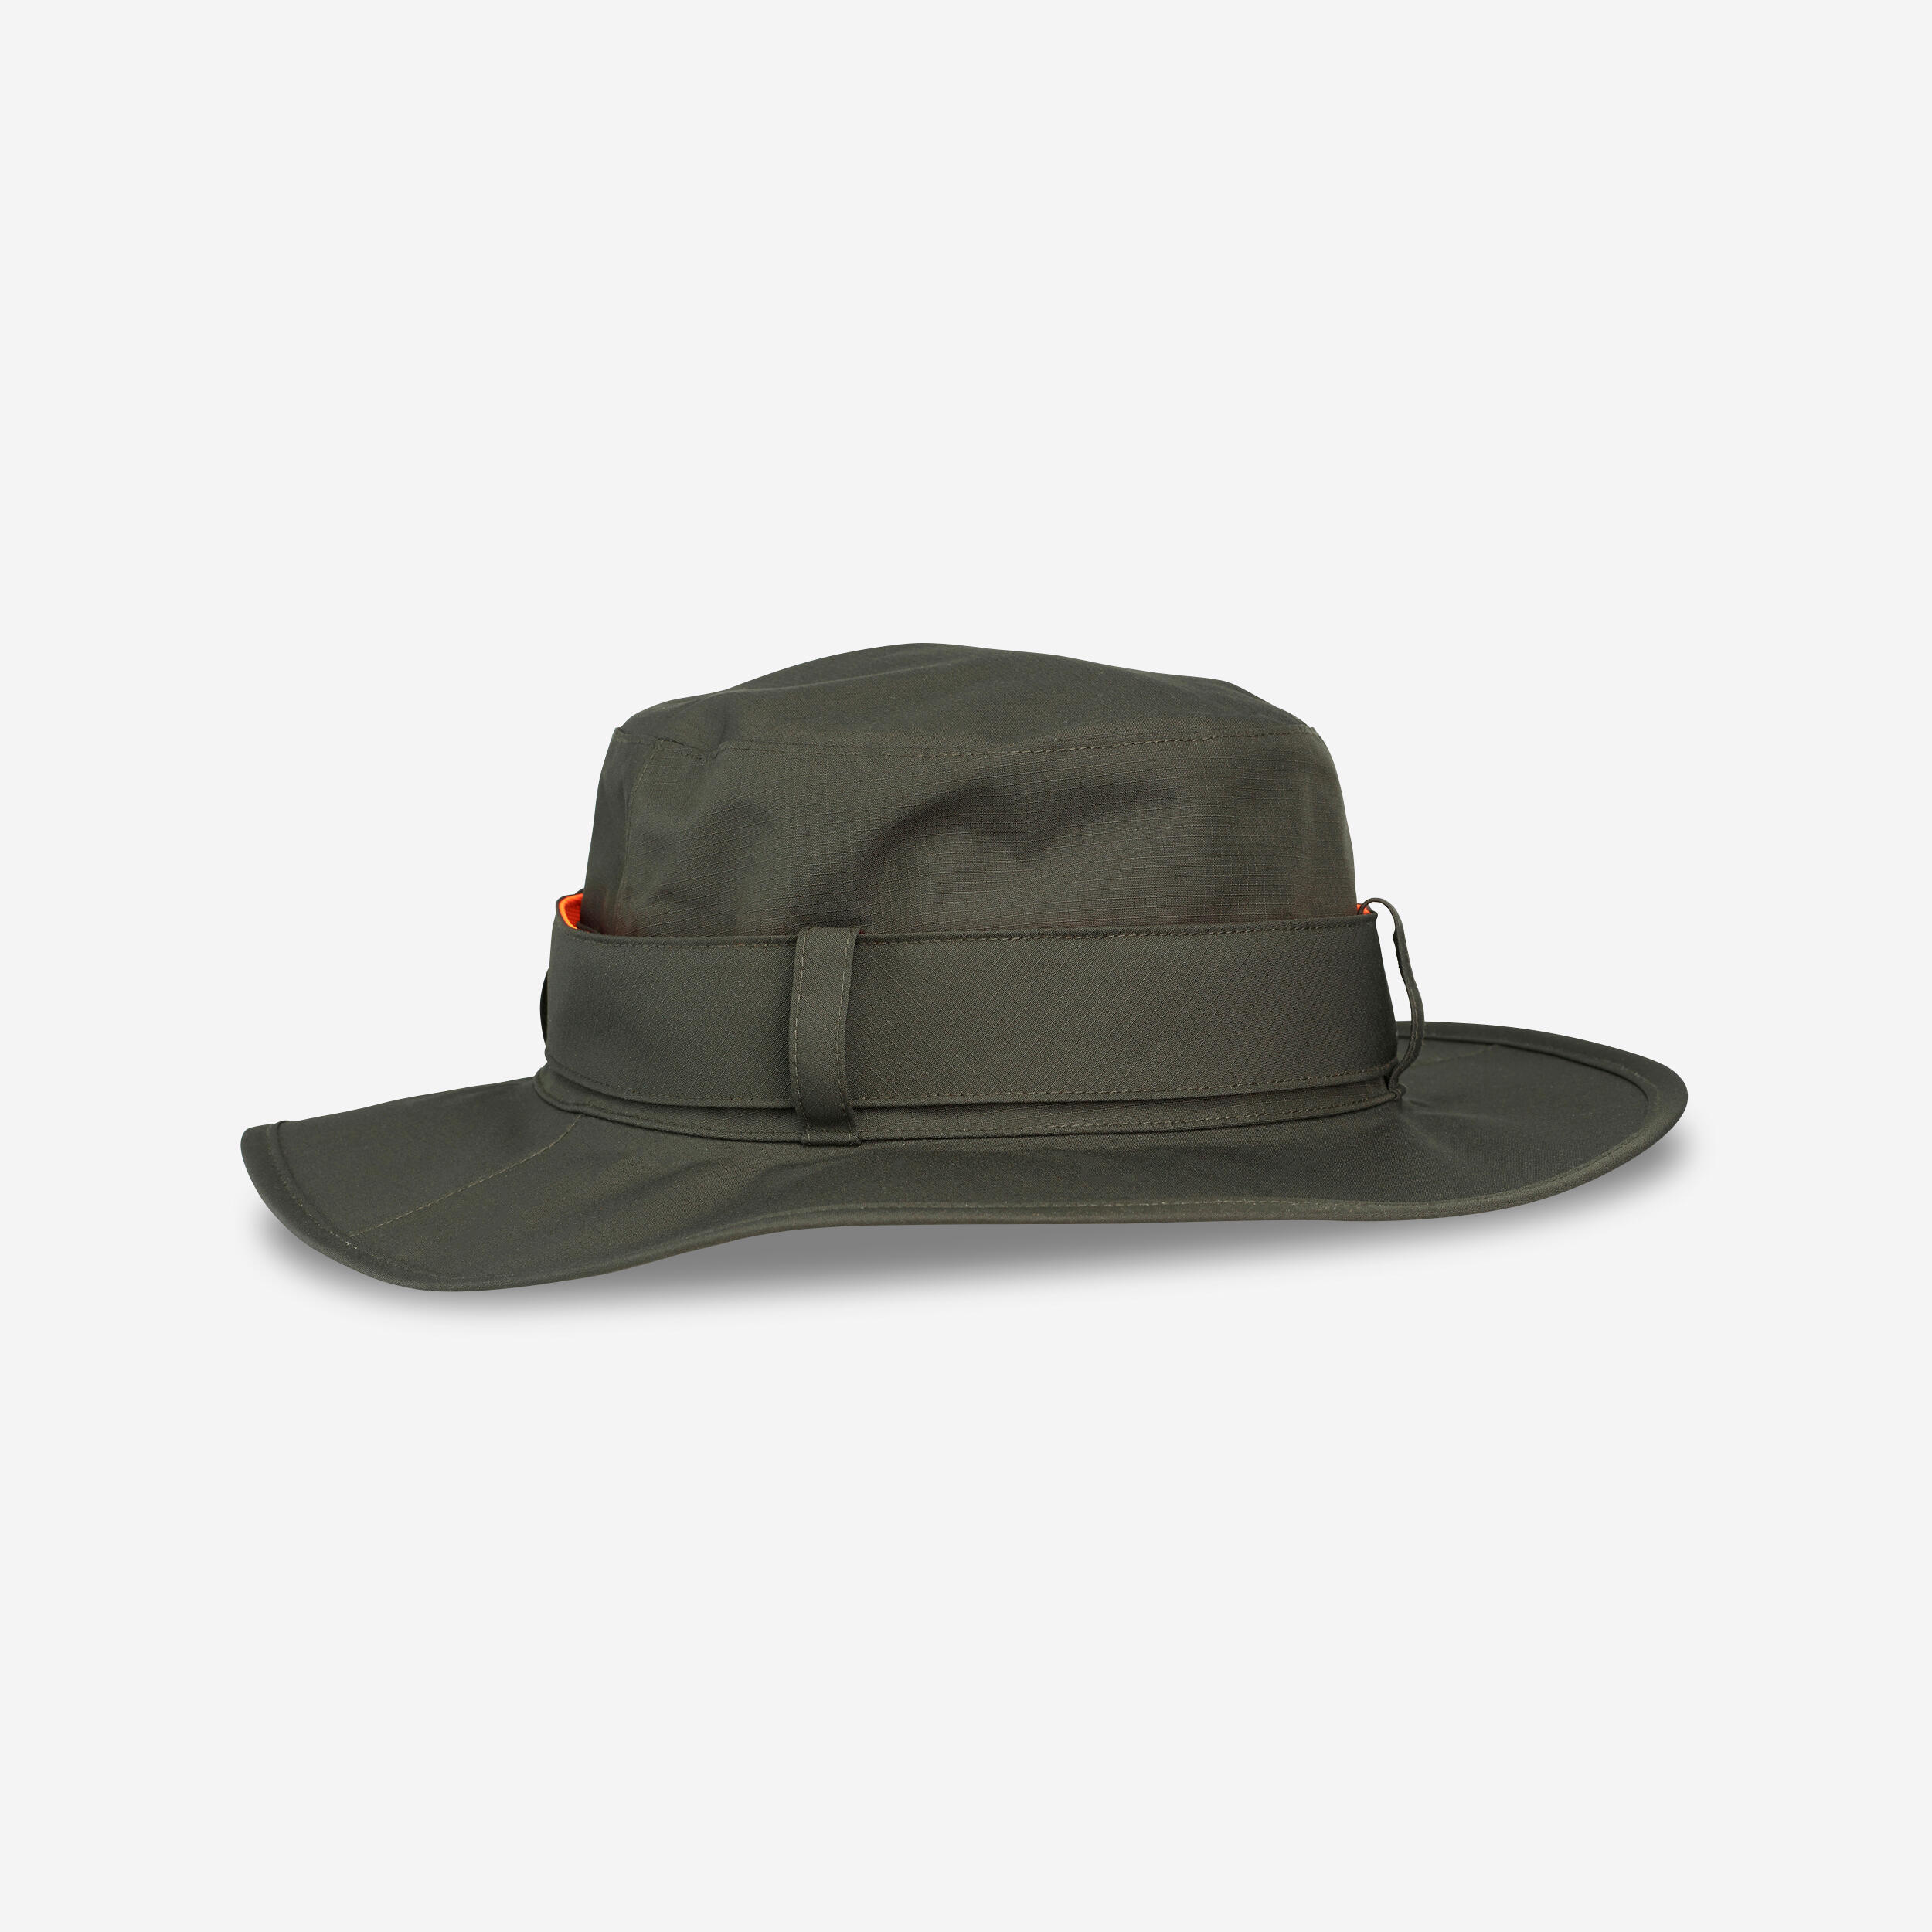 Pălărie SG520 impermeabilă și rezistentă verde bărbați La Oferta Online decathlon imagine La Oferta Online